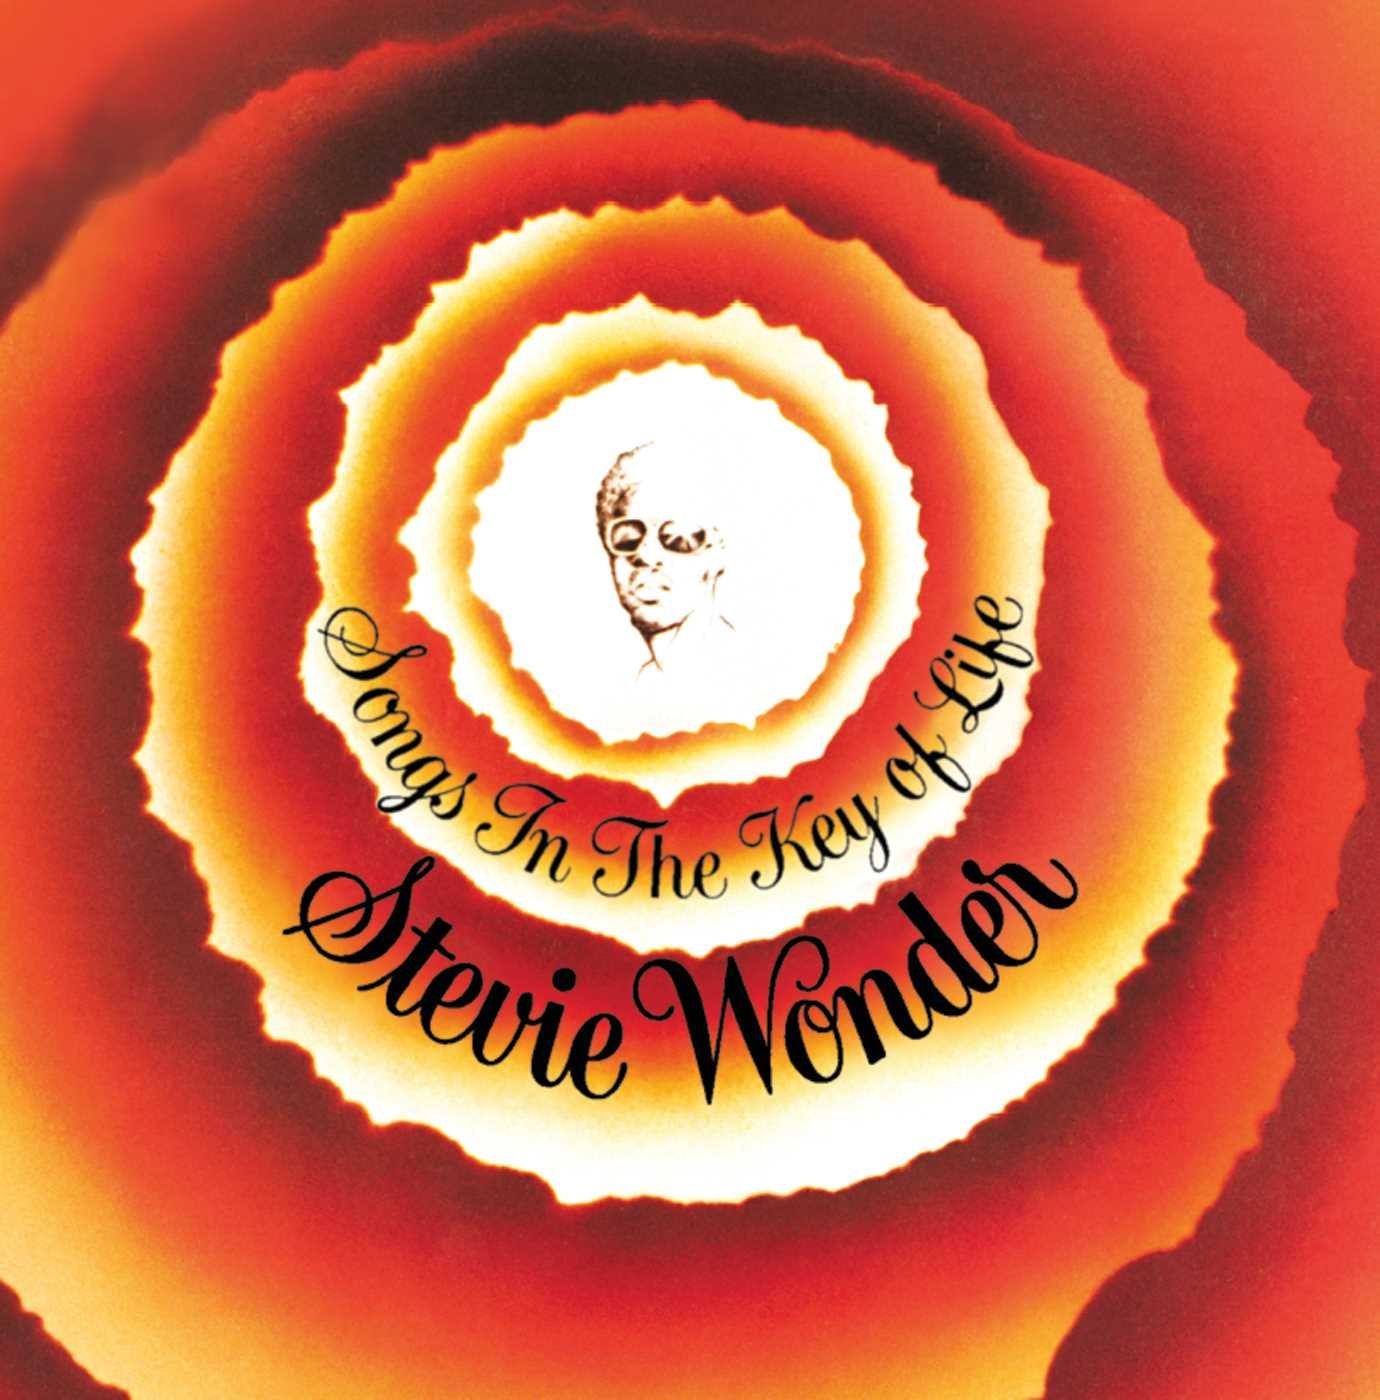 STEVIE WONDER - SONGS IN THE KEY OF LIFE - VINYL 2LP BONUS 7" - Wah Wah Records